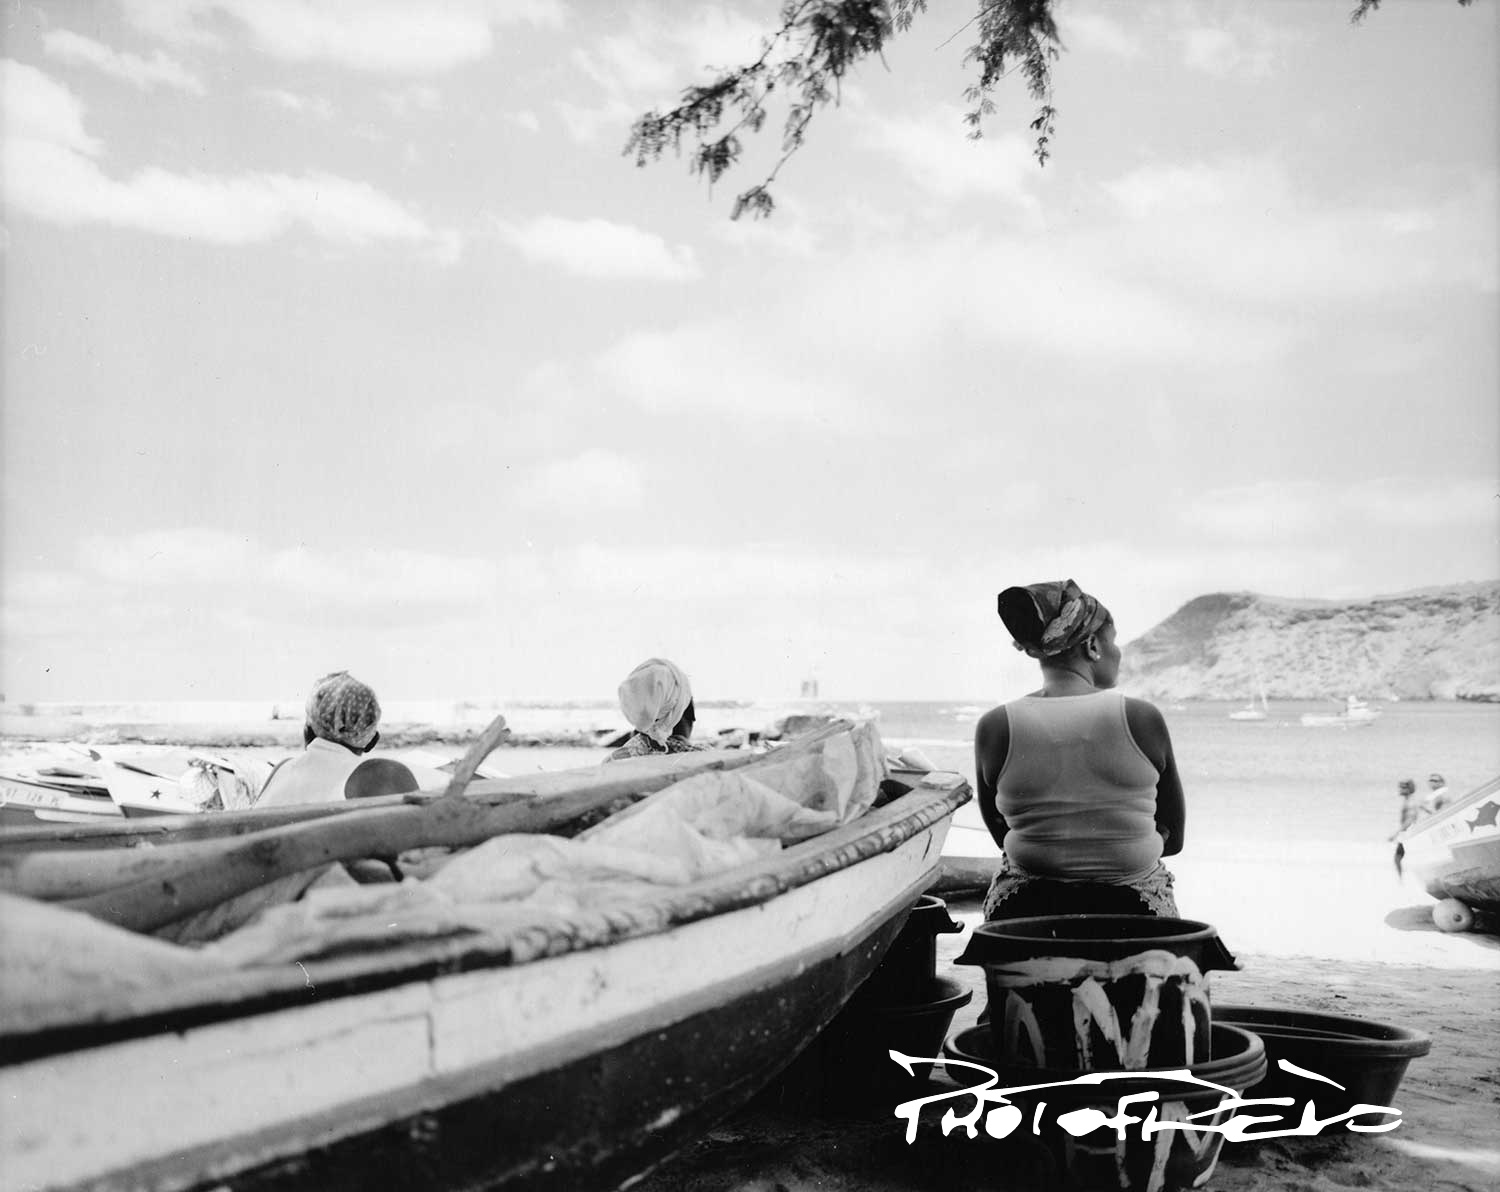 Femmes attendant le retour des pêcheurs. Elles sont assises face à la mer et regardent l'horizon.
Au premier plan, il y aune barque de pêcheurs posée sur le sable.
Plage de Tarafal île de Santiago Cap Vert